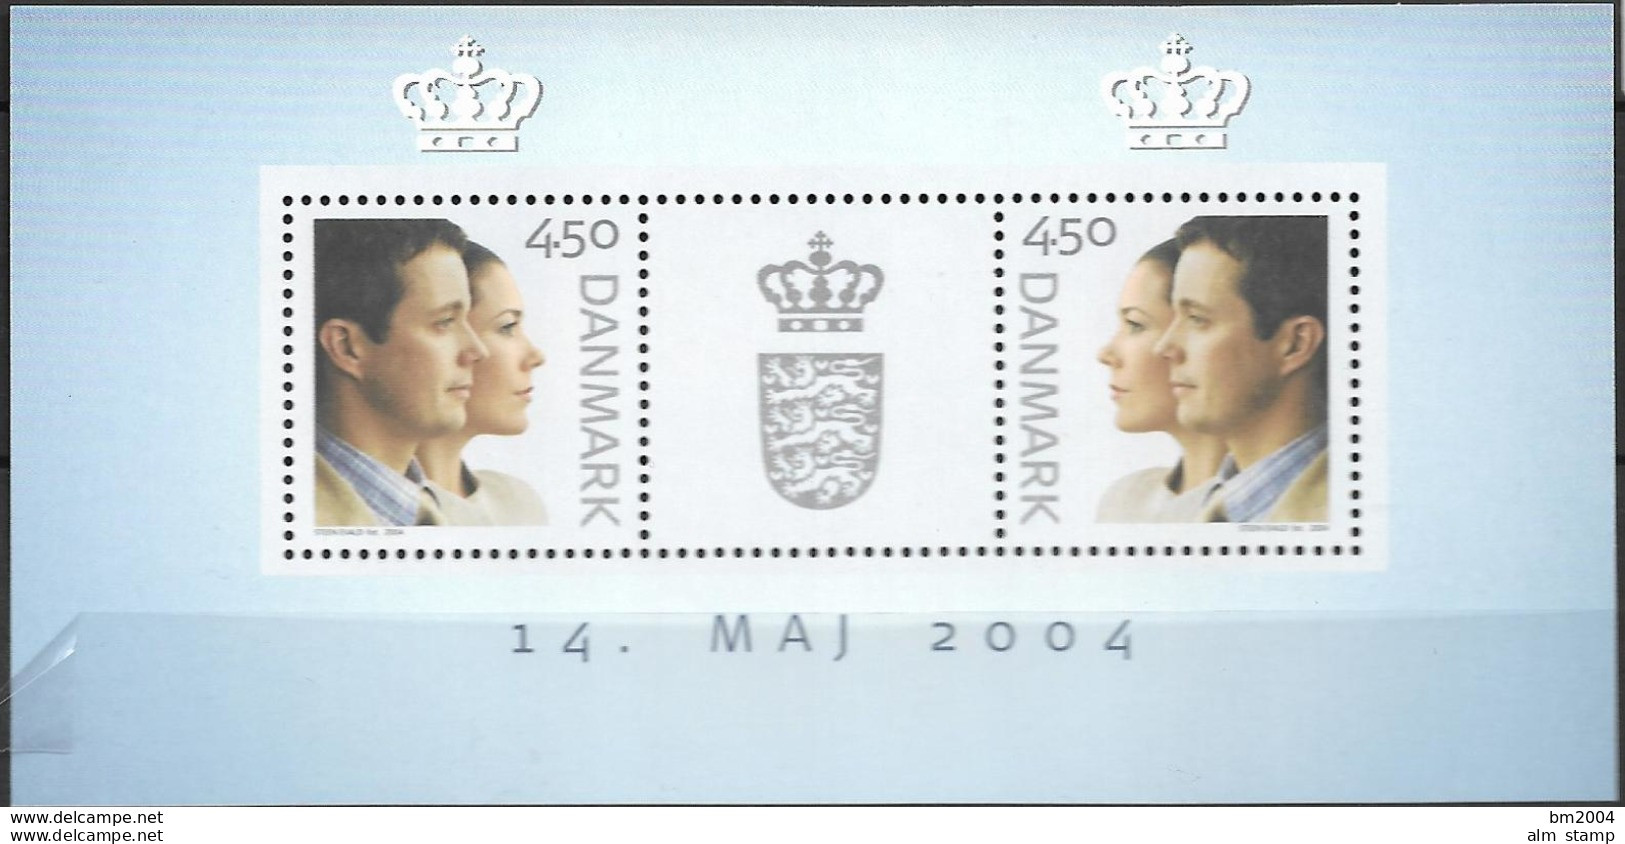 2004 Dänemark Mi. Bl. 23 **MNH  Hochzeit Von Kronprinz Frederik Und Mary Donaldson - Hojas Bloque